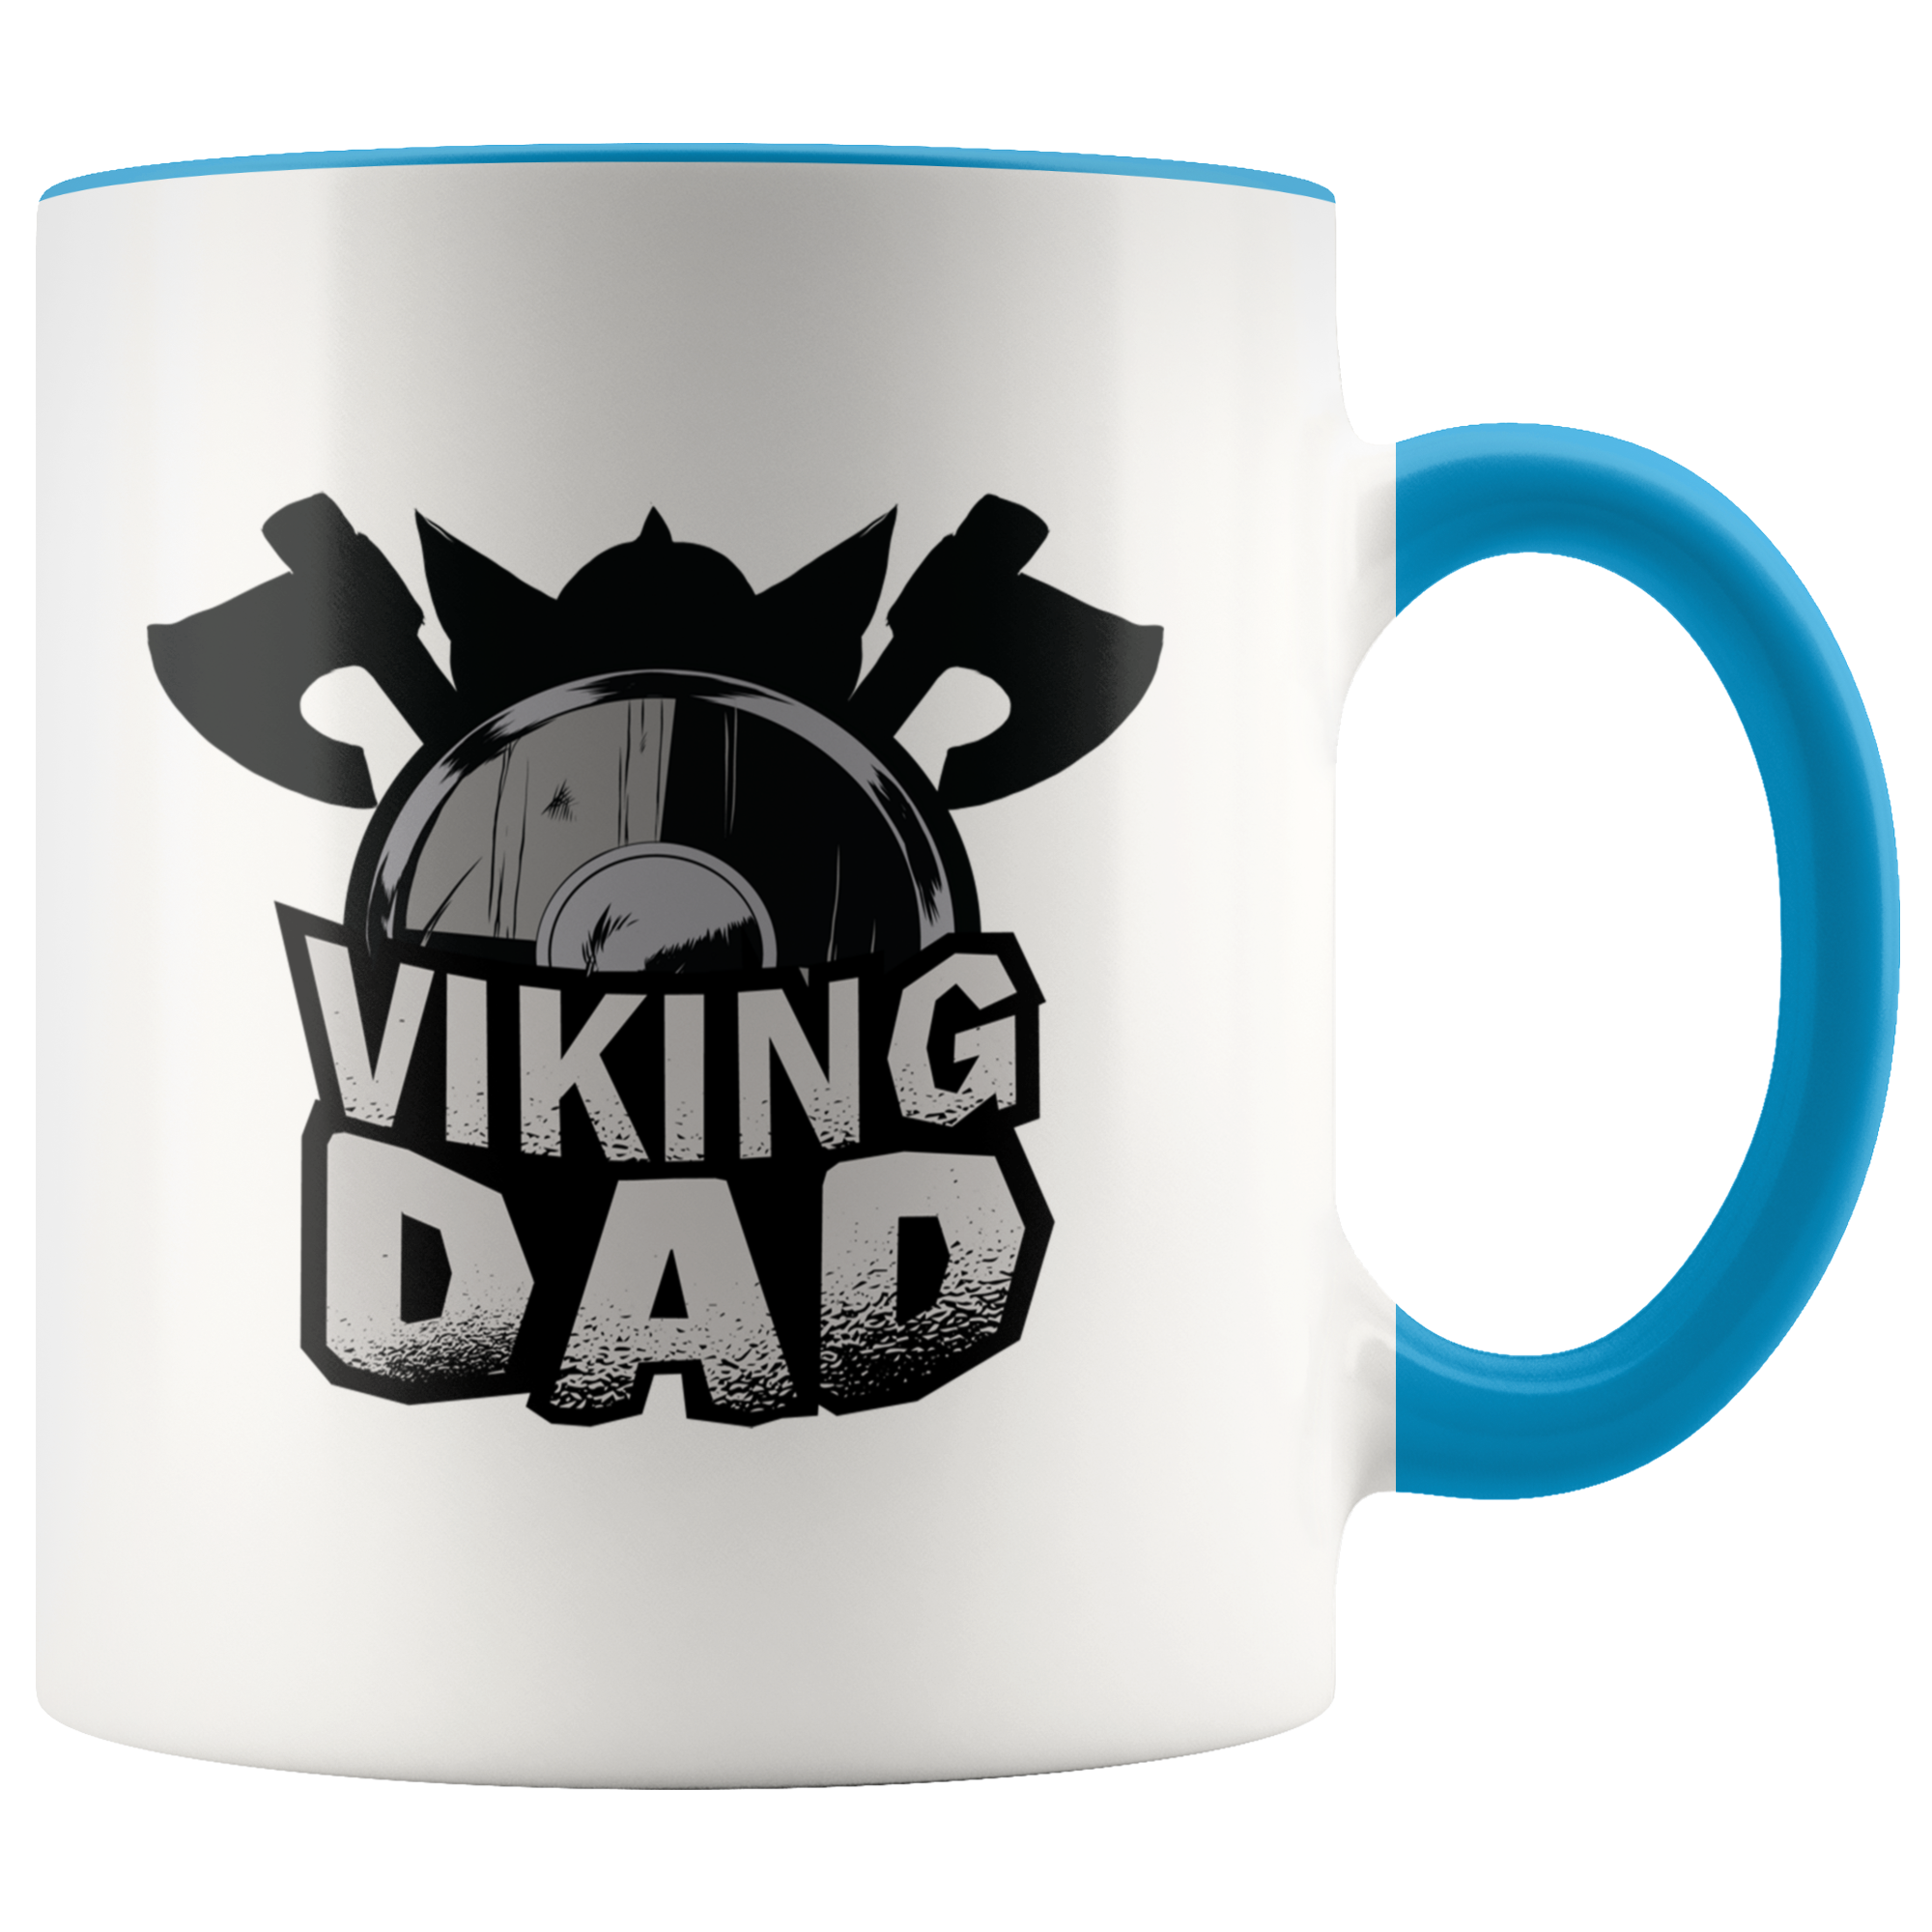 Viking Dad Mug